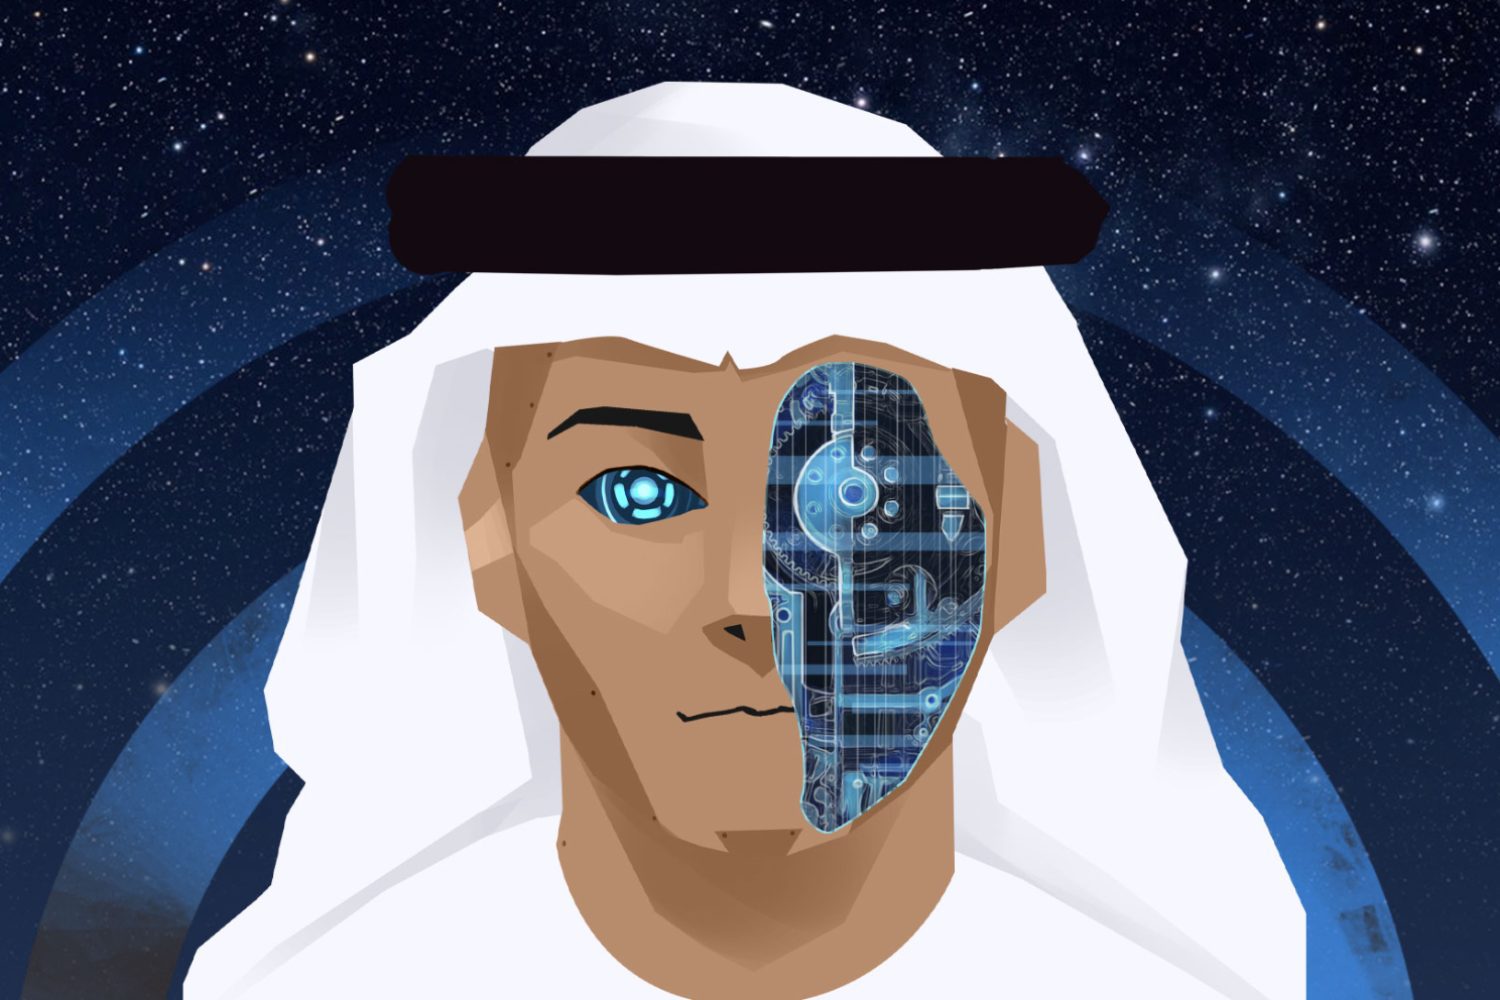 هوش مصنوعی اختصاصی کشور امارات برای رقابت با بزرگان دنیا - آژانس مدیا و مارکتینگ ردی استودیو